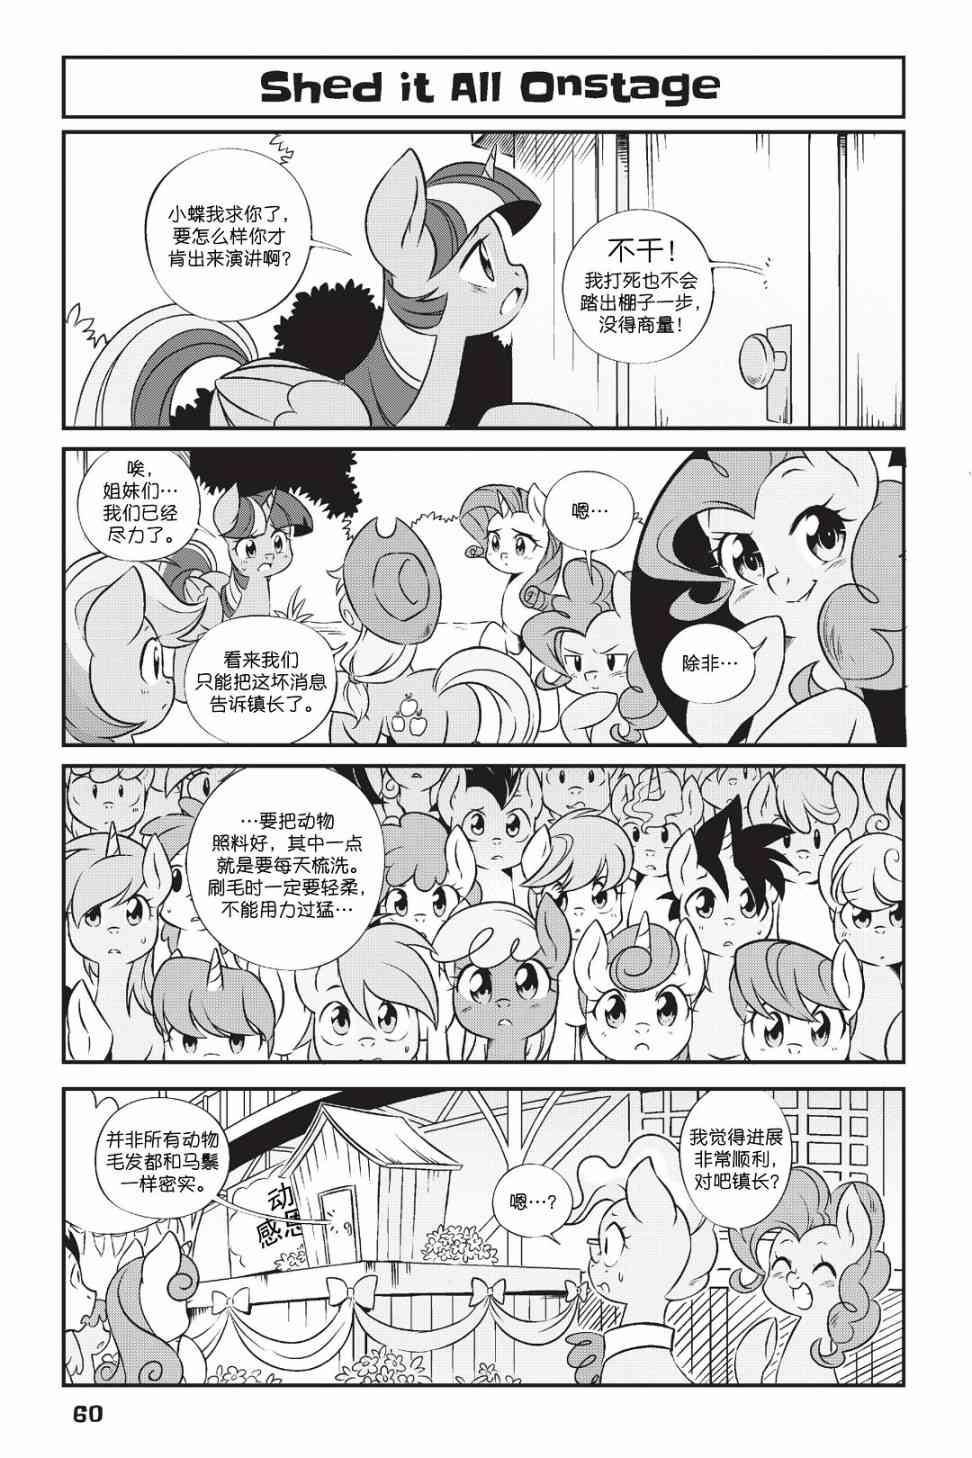 彩虹小馬G4：友情就是魔法 - 新日版漫畫第01部第04話 - 1